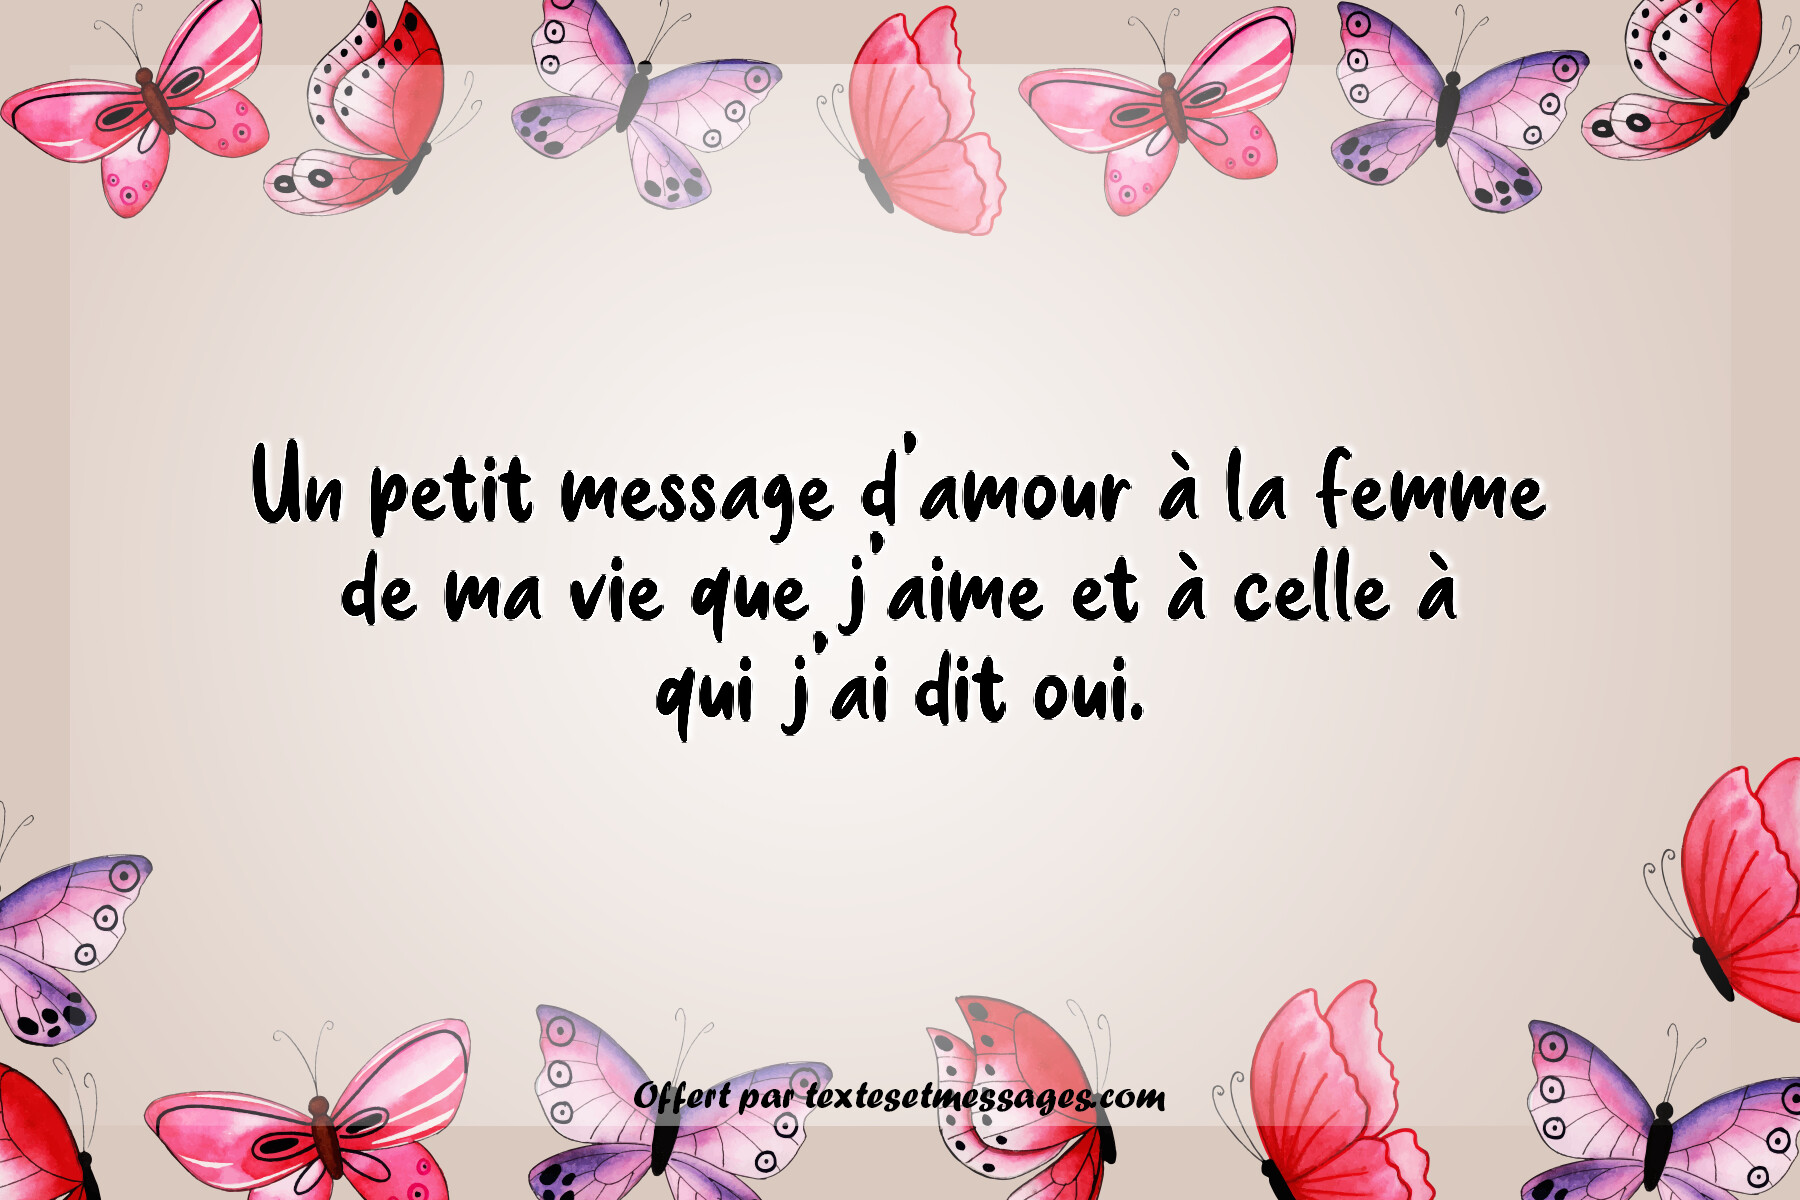 Message d'amour femme n°4